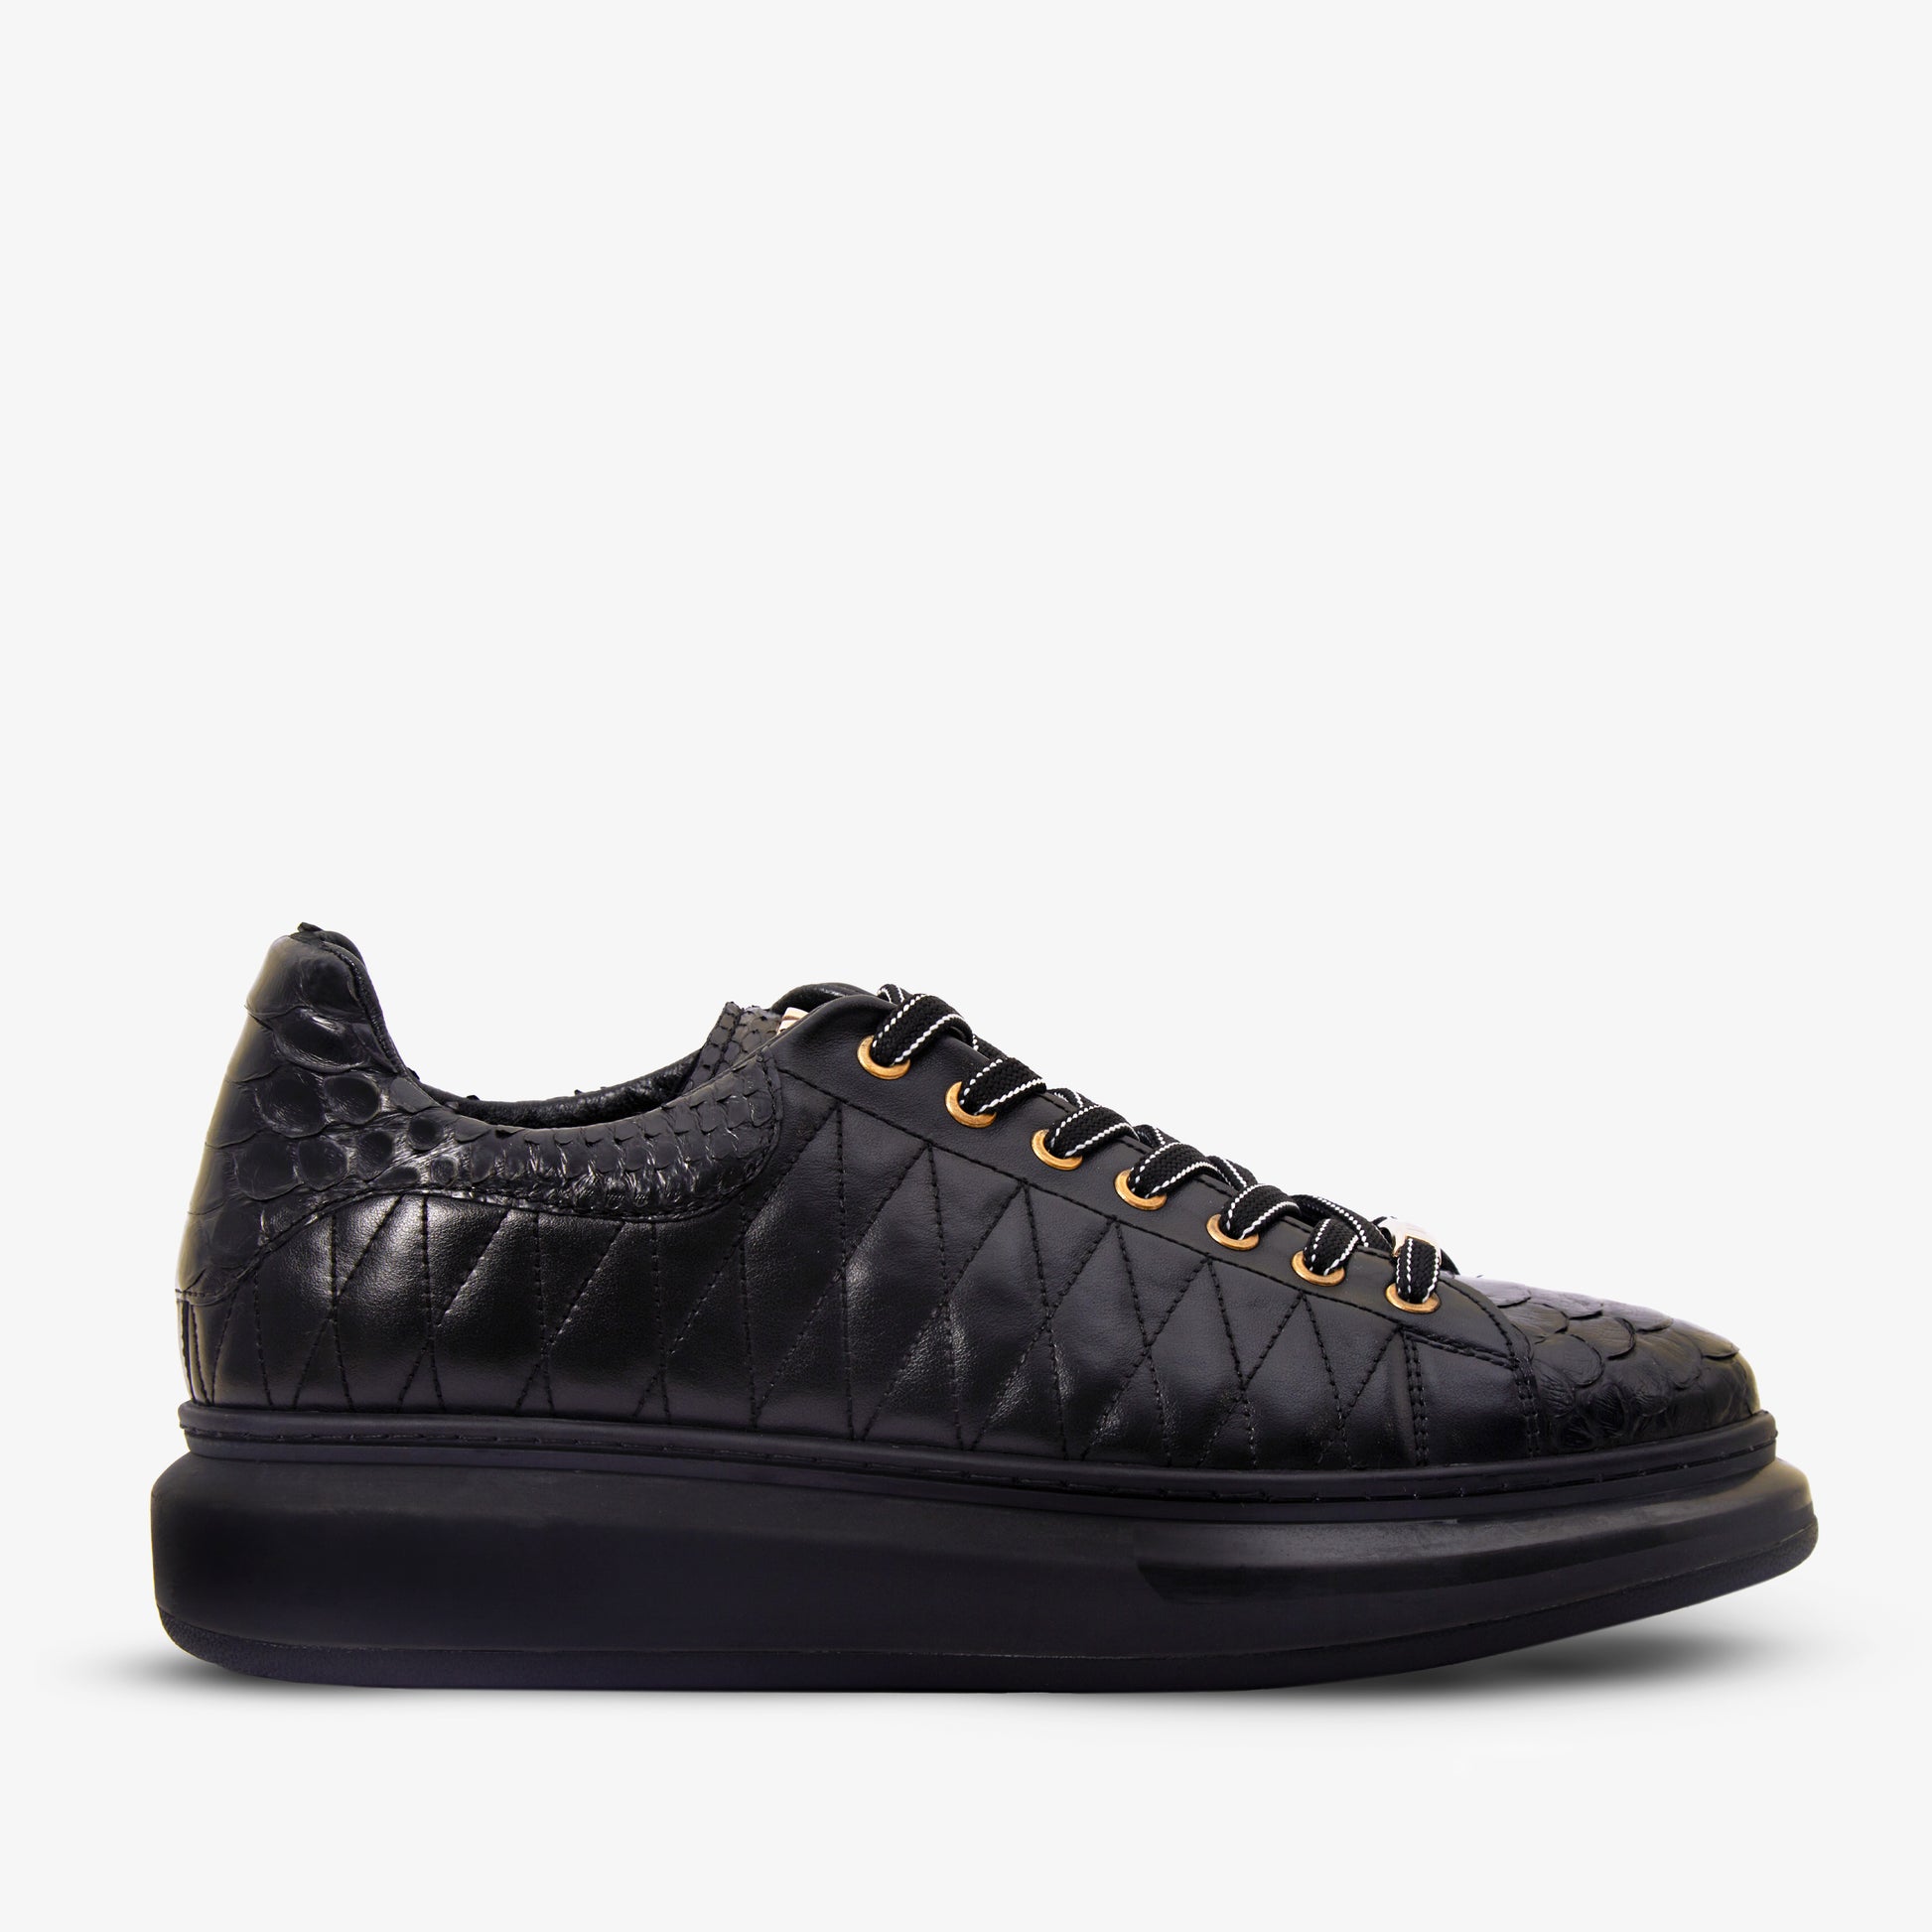 The Adler Black Snk Leather Men Sneaker Limited Edition – Vinci Leather ...